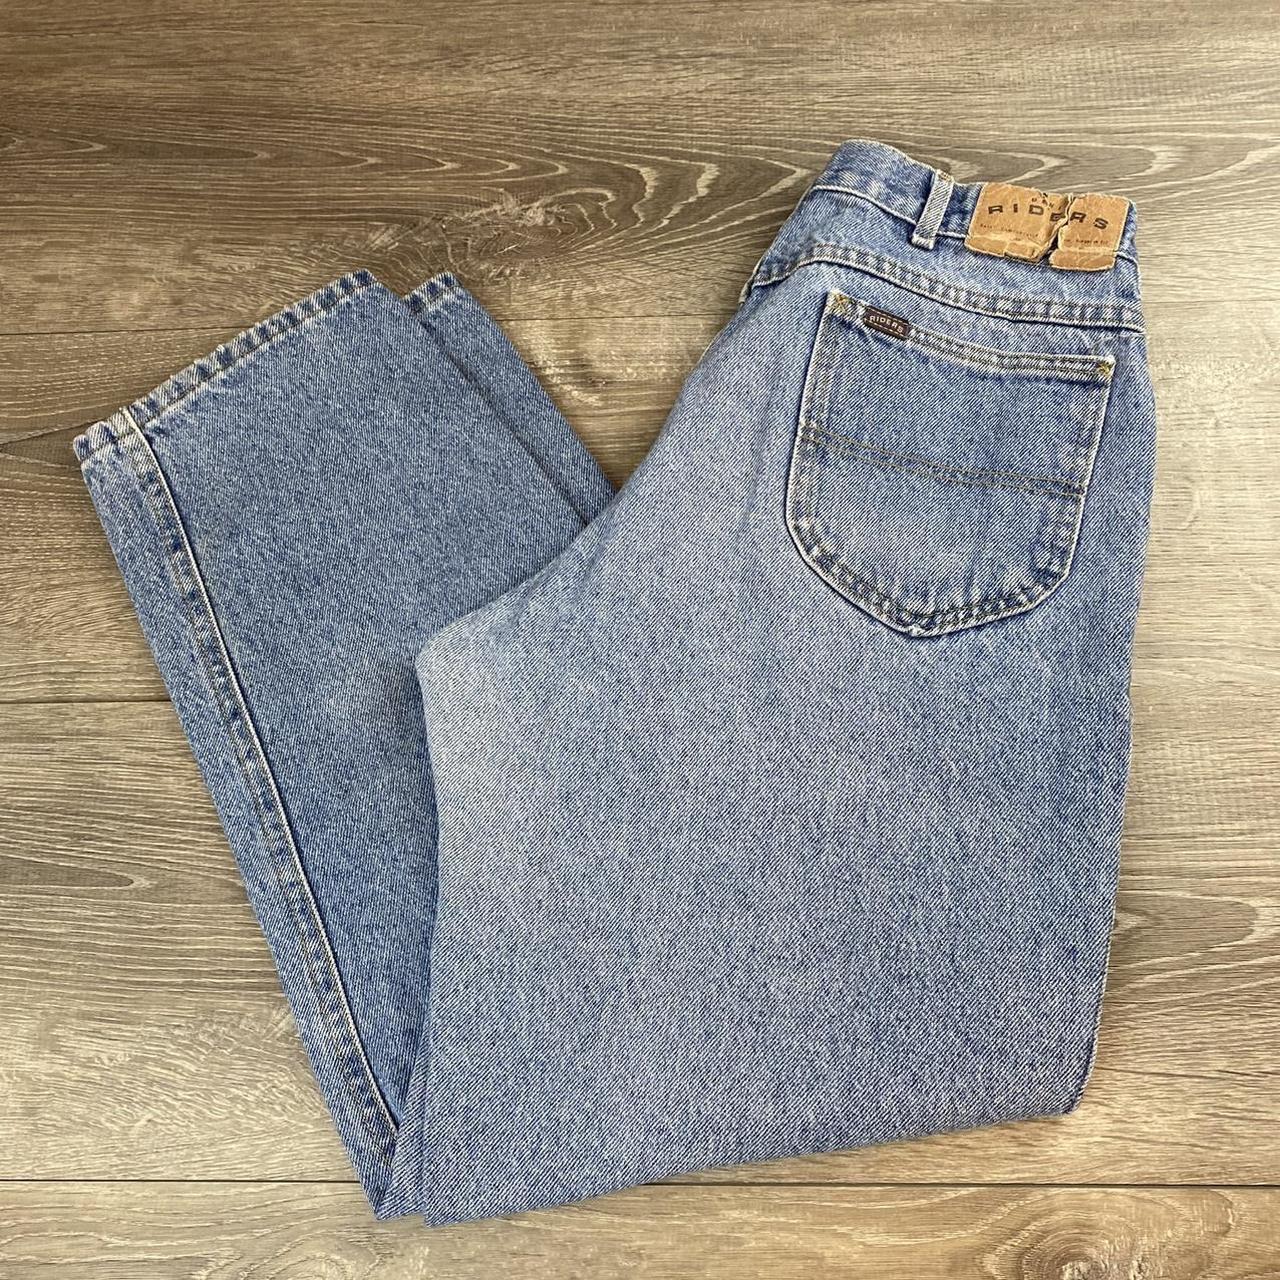 Vintage 90s Riders Denim Jeans Pants Blue Washed... - Depop